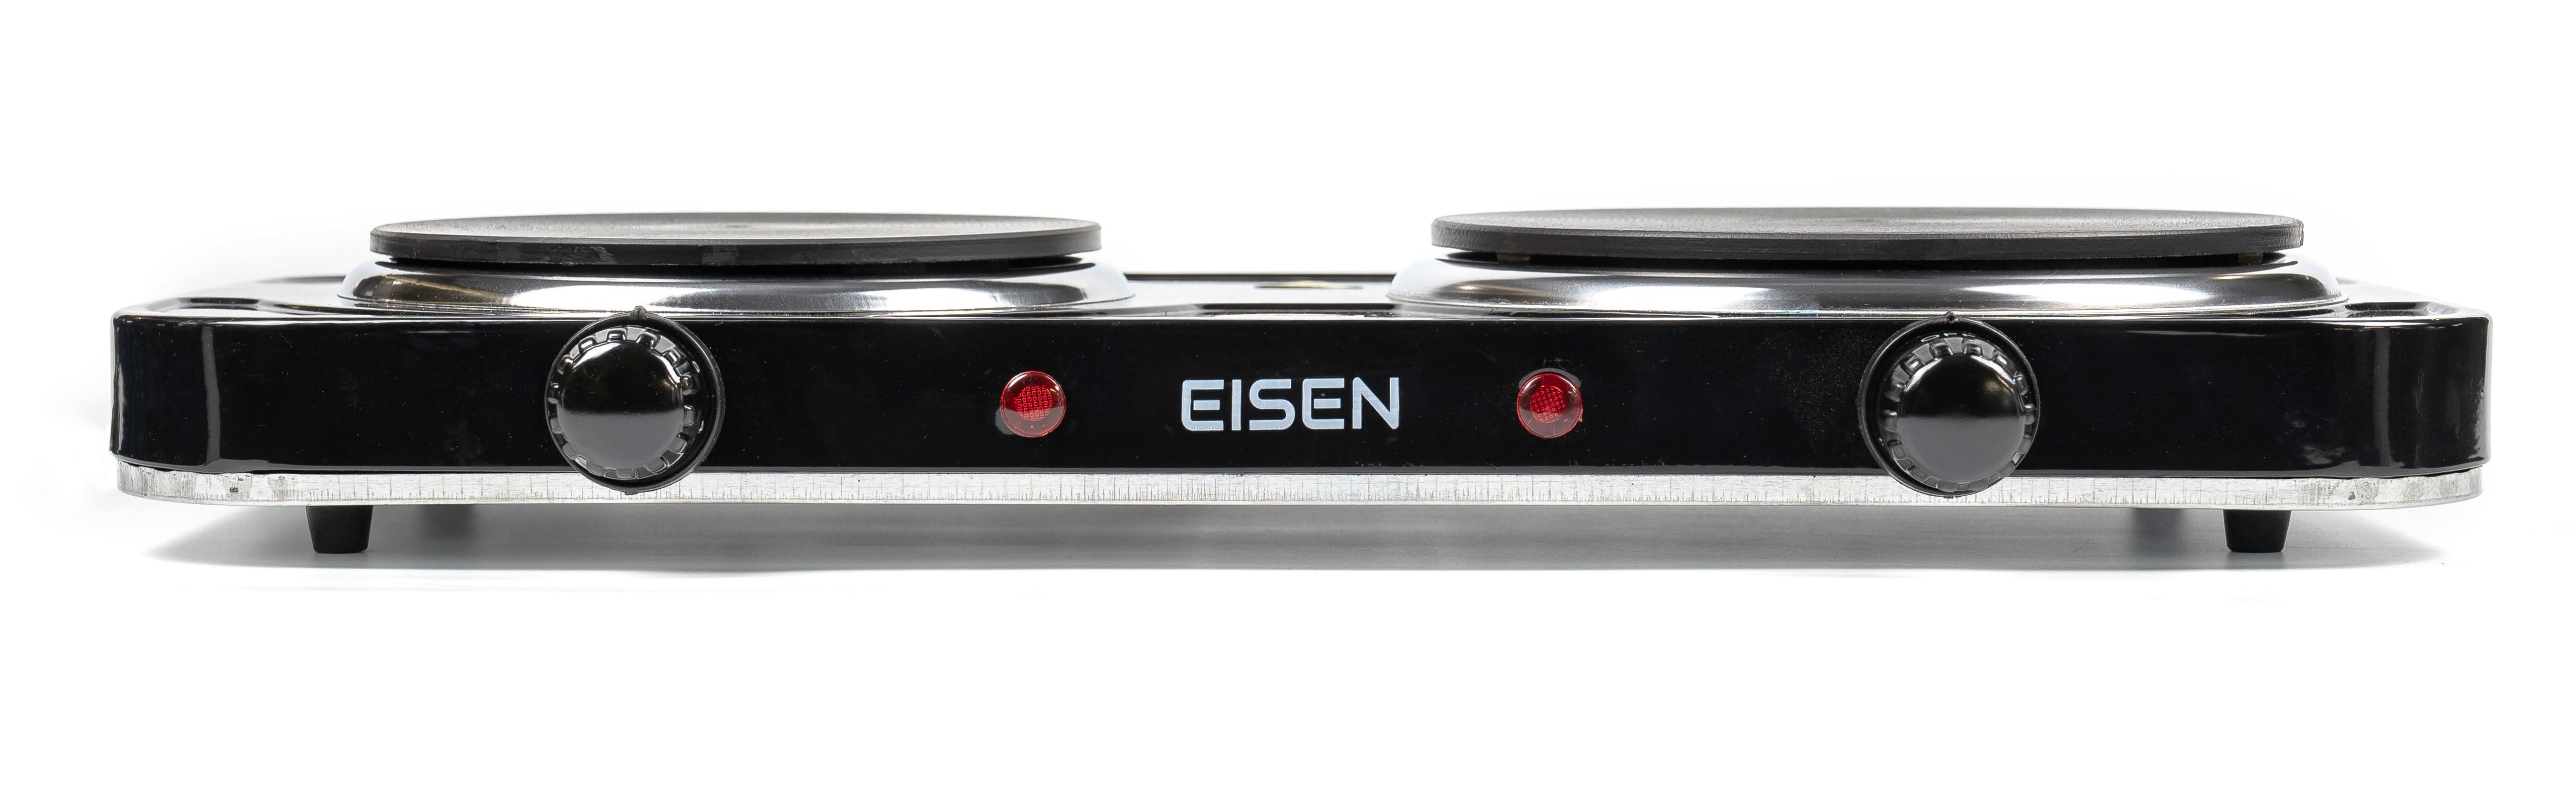 Плита настольная Eisen EHP-258B цена 843.70 грн - фотография 2